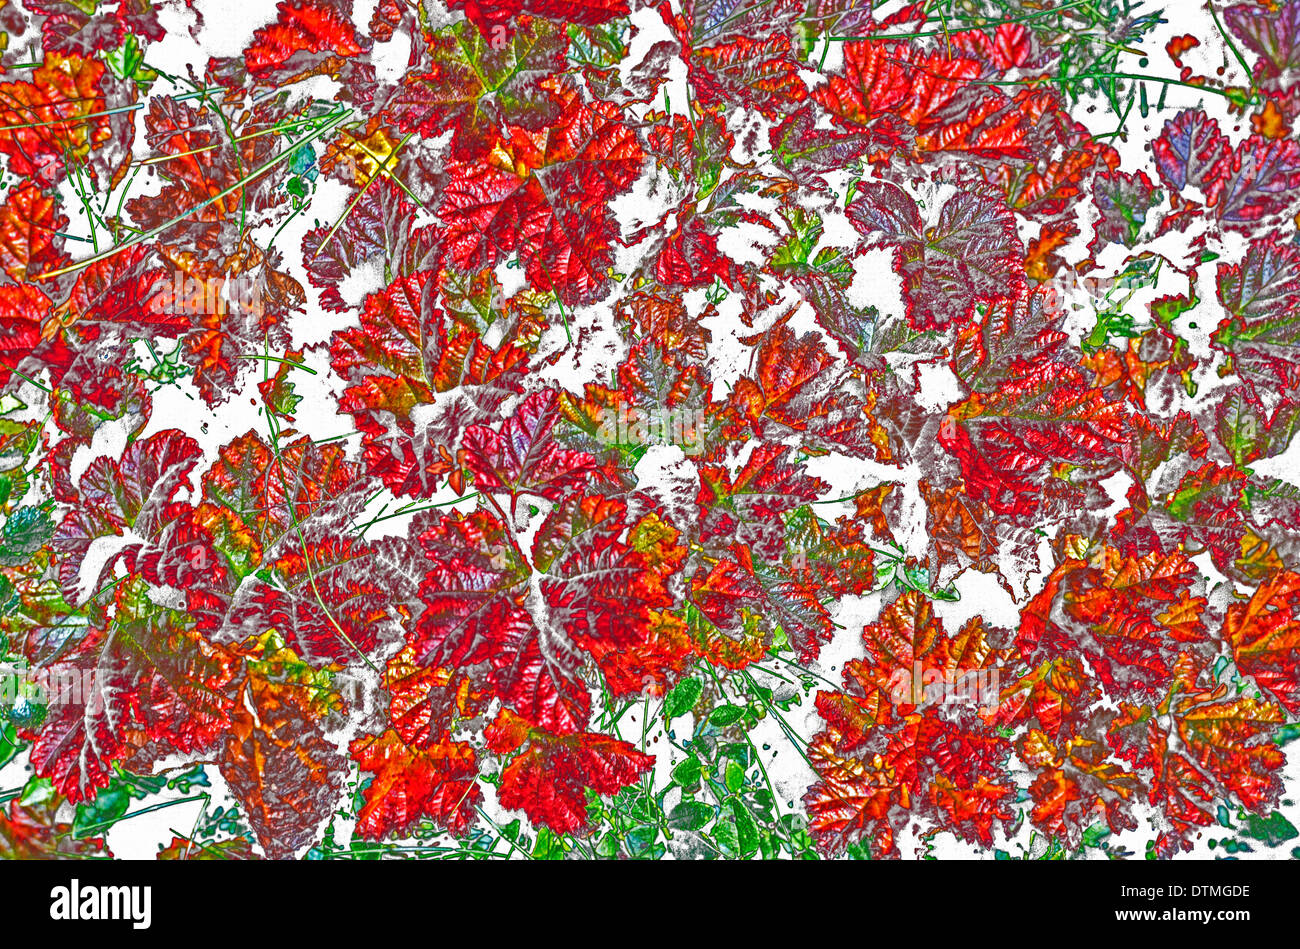 Una fotografía de coloridas hojas de otoño que han caído a la tierra ha sido alterada digitalmente para un llamativo efecto de artes gráficas. Foto de stock